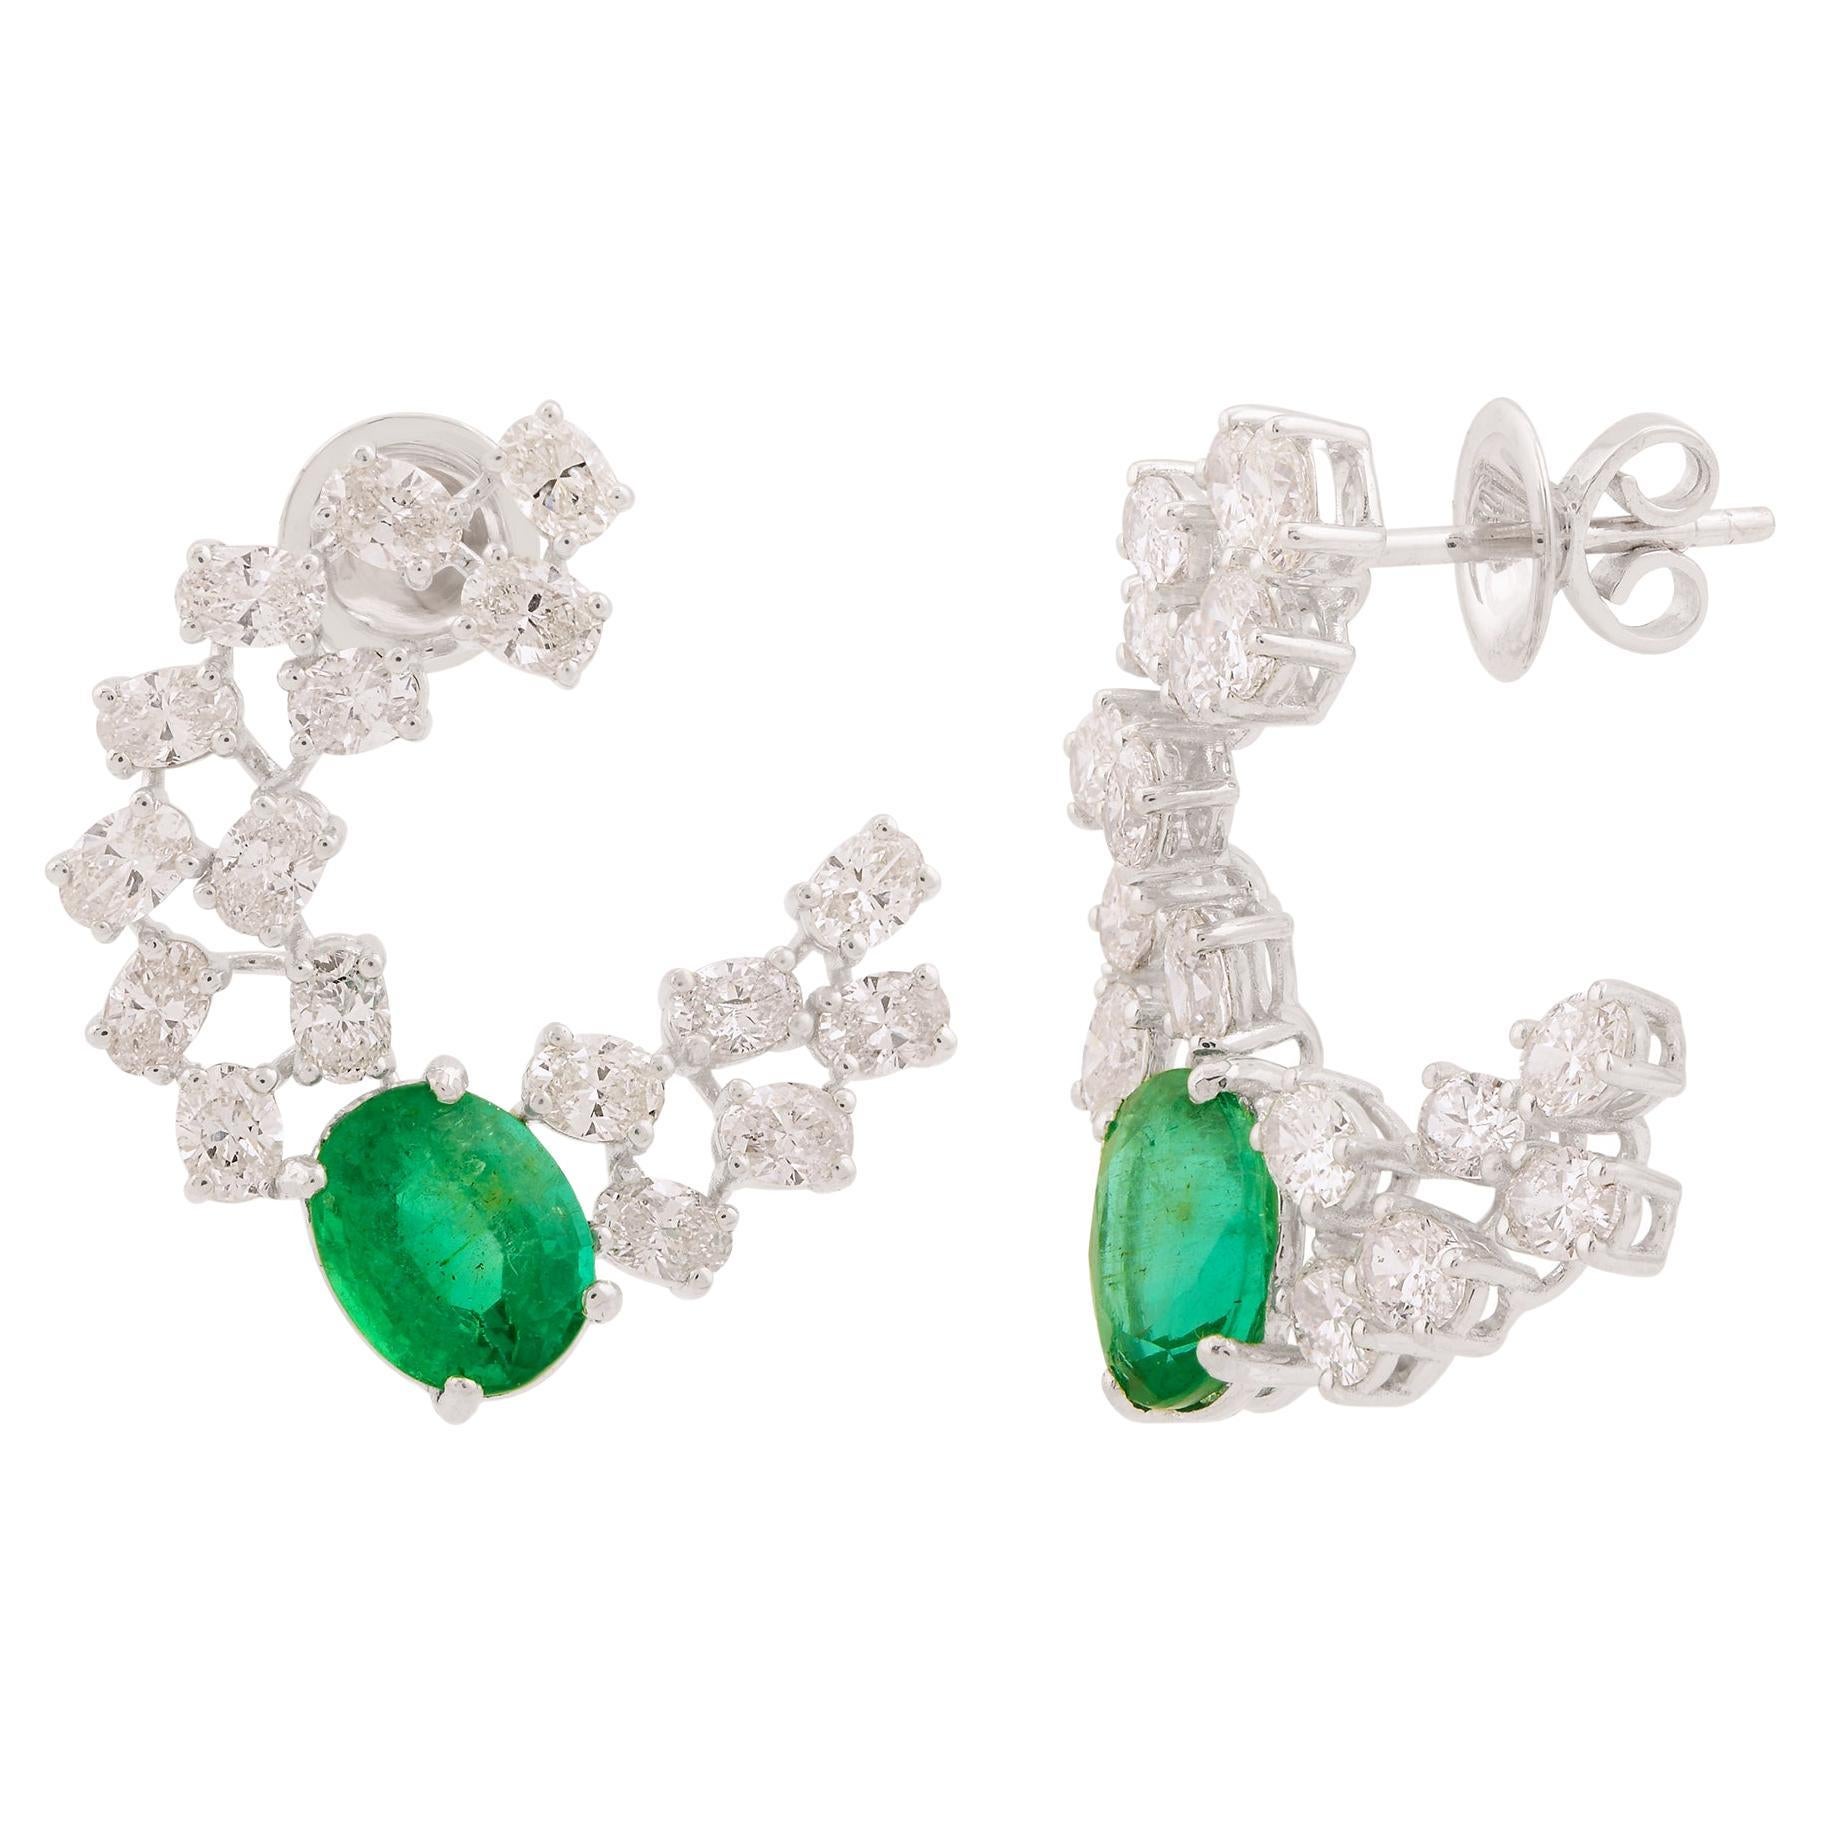 Zambian Oval Emerald Gemstone Stud Earrings Diamond Solid 14k White Gold Jewelry